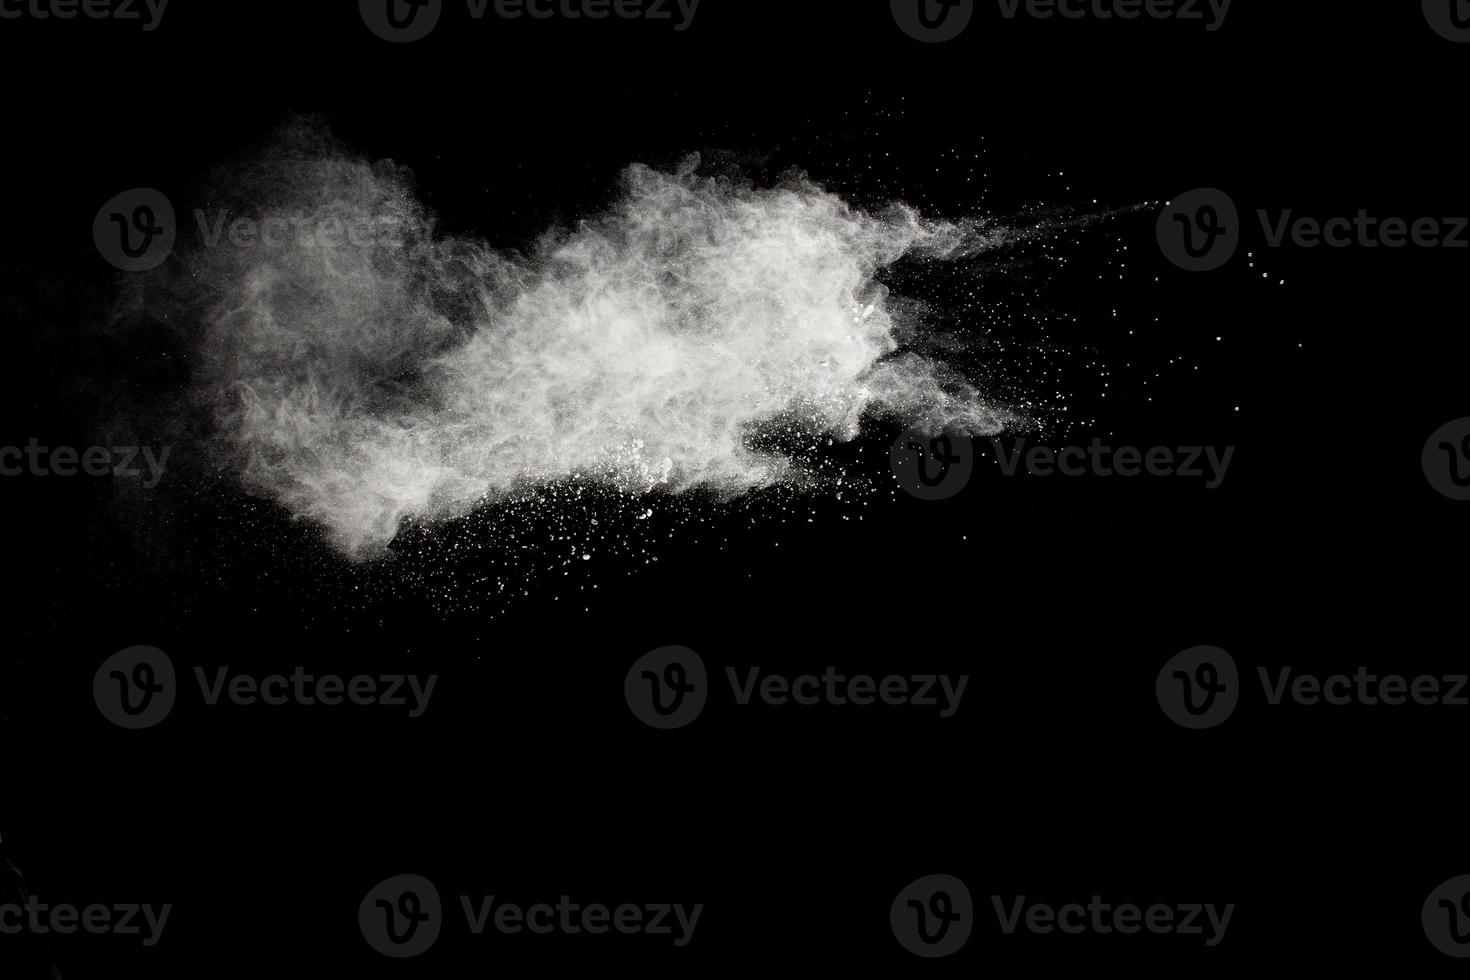 witte poeder explosie clouds.freeze beweging van witte stofdeeltjes spatten op zwarte achtergrond. foto